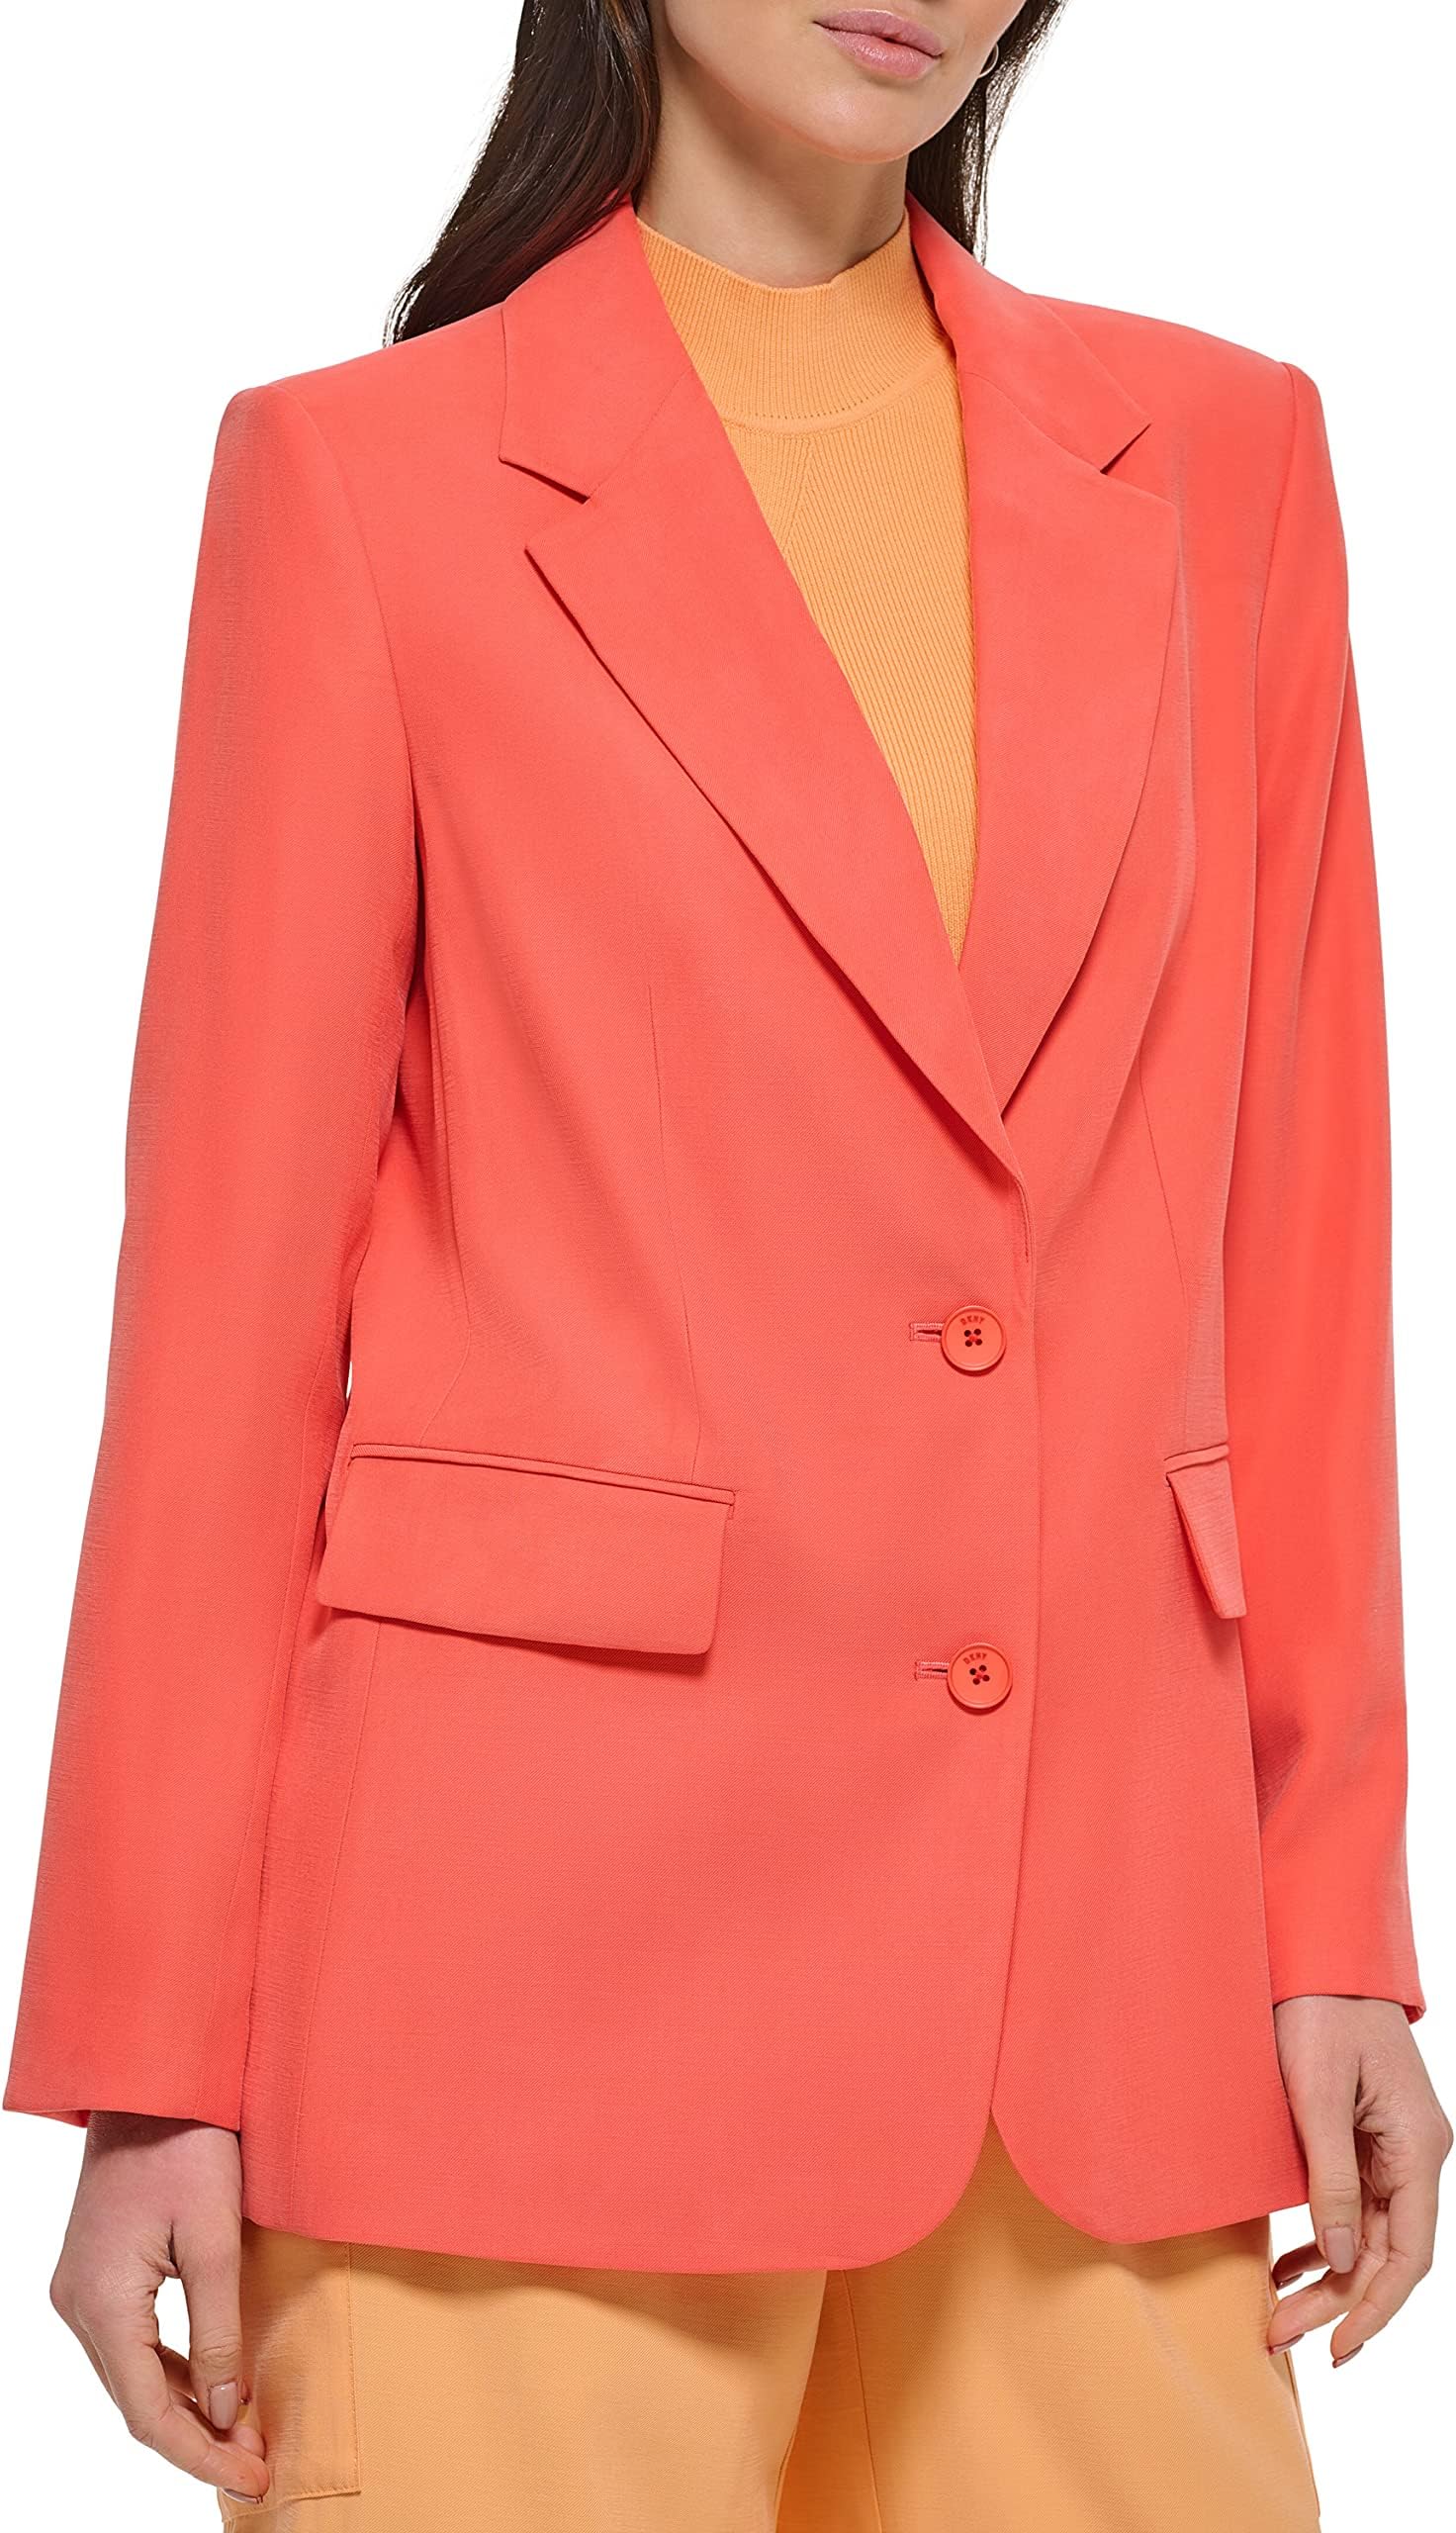 Пиджак на одной пуговице из матового твила DKNY, цвет Persimmon однотонный пиджак на одной пуговице dkny цвет light fatique